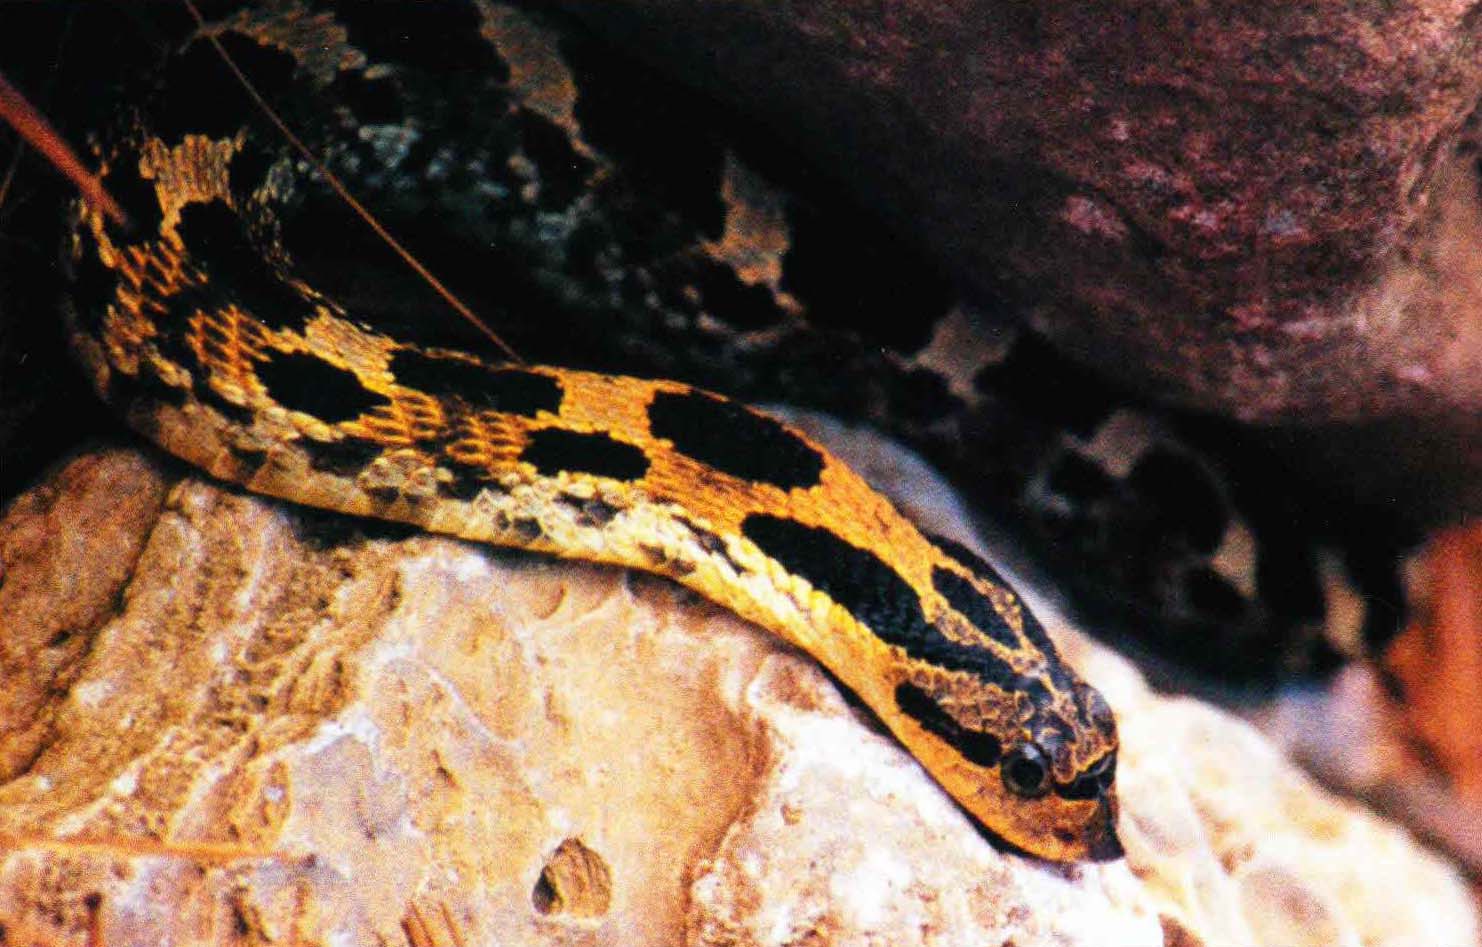 Широконосая змея - дневная рептилия. На рассвете и закате она любит погреться на солнце, а весь световой день посвящает охоте.